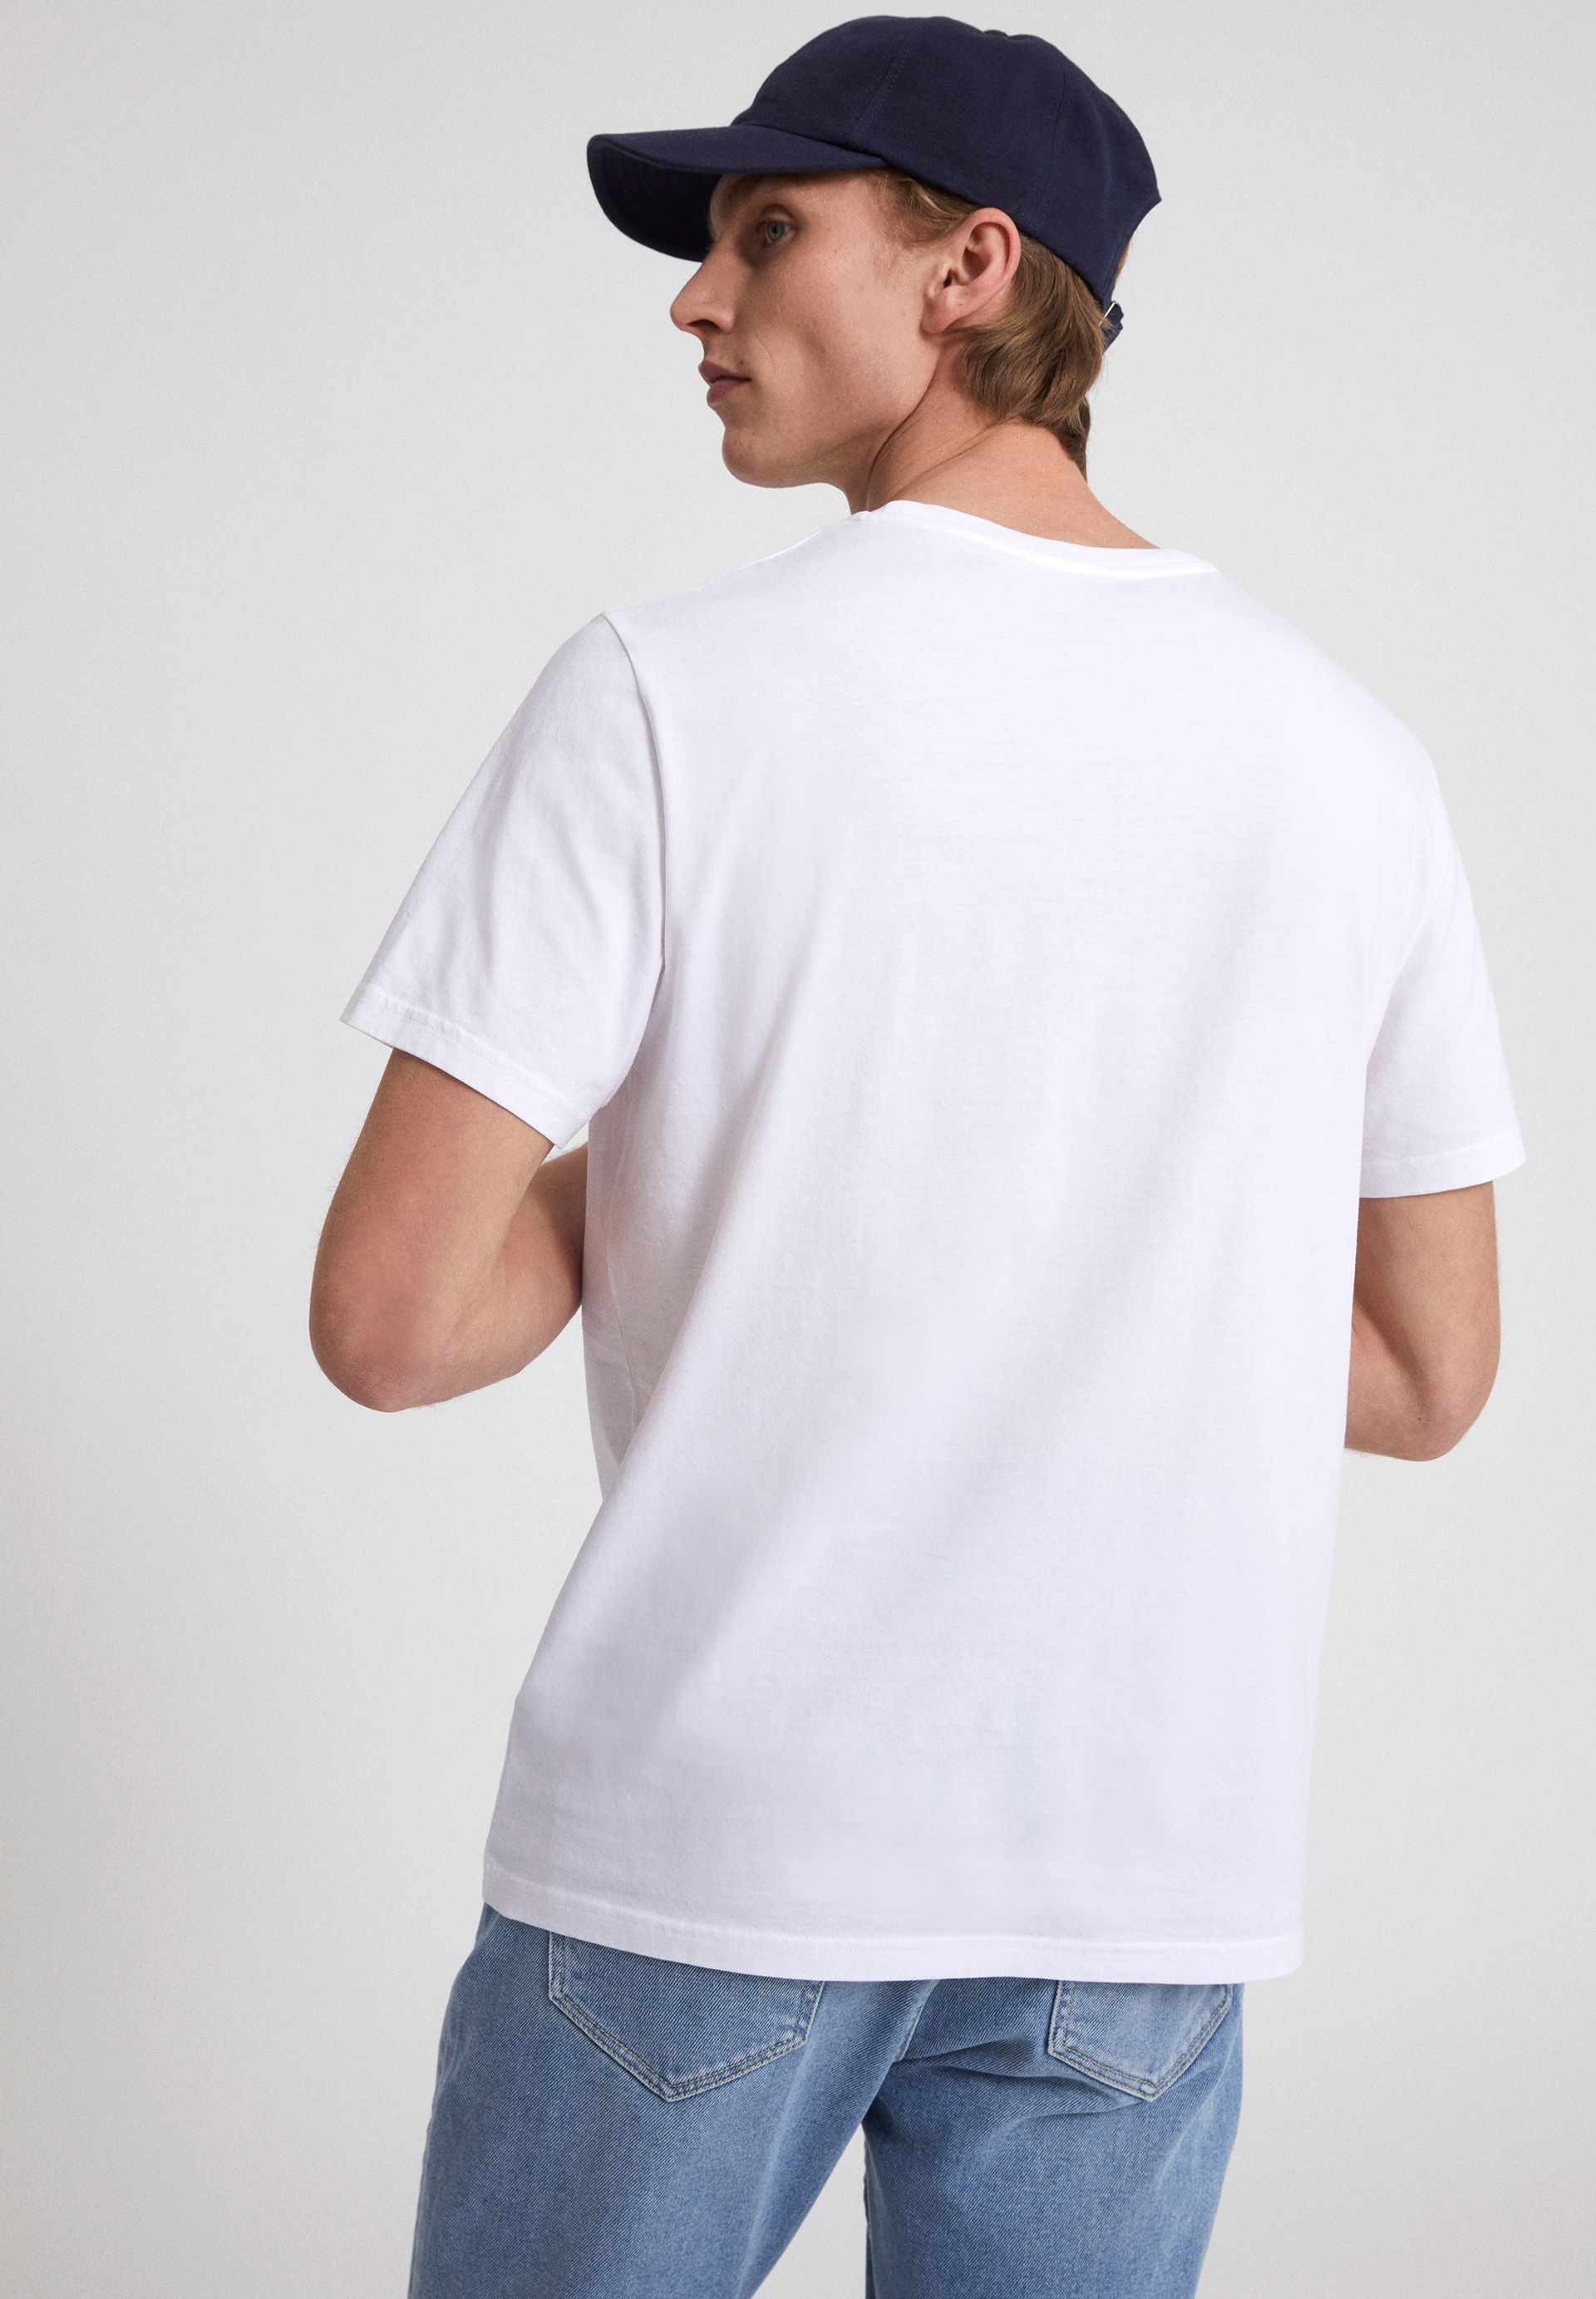 Herren-Shirt JAAMES 45 BIKES white